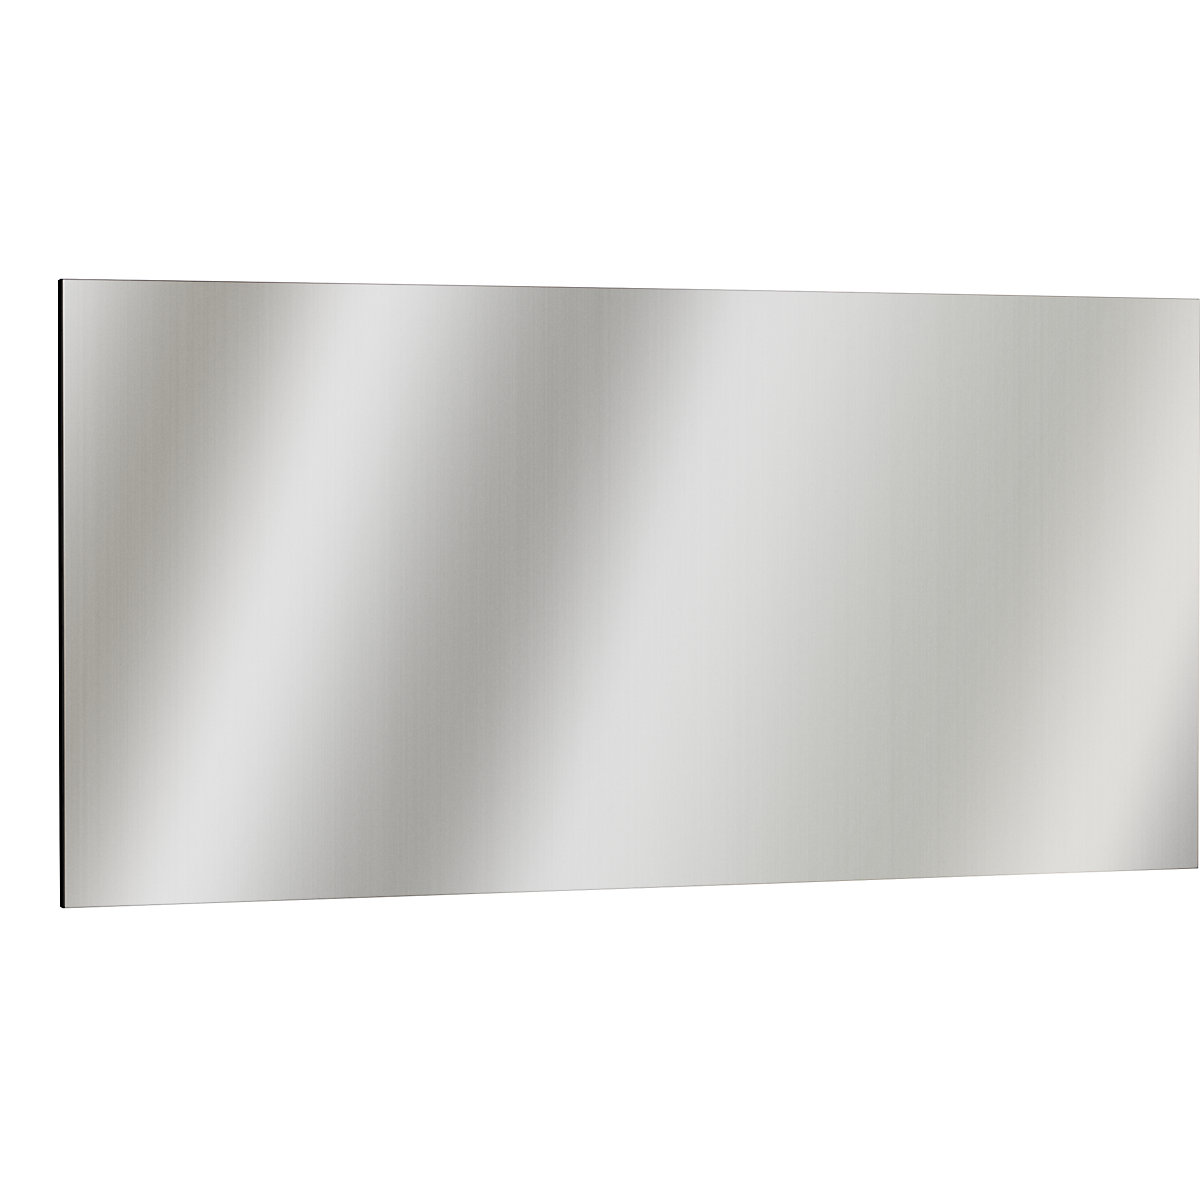 Stainless steel magnetic board – eurokraft basic, brushed matt, octagonal bevelled edges, WxH 1965 x 965 mm-5